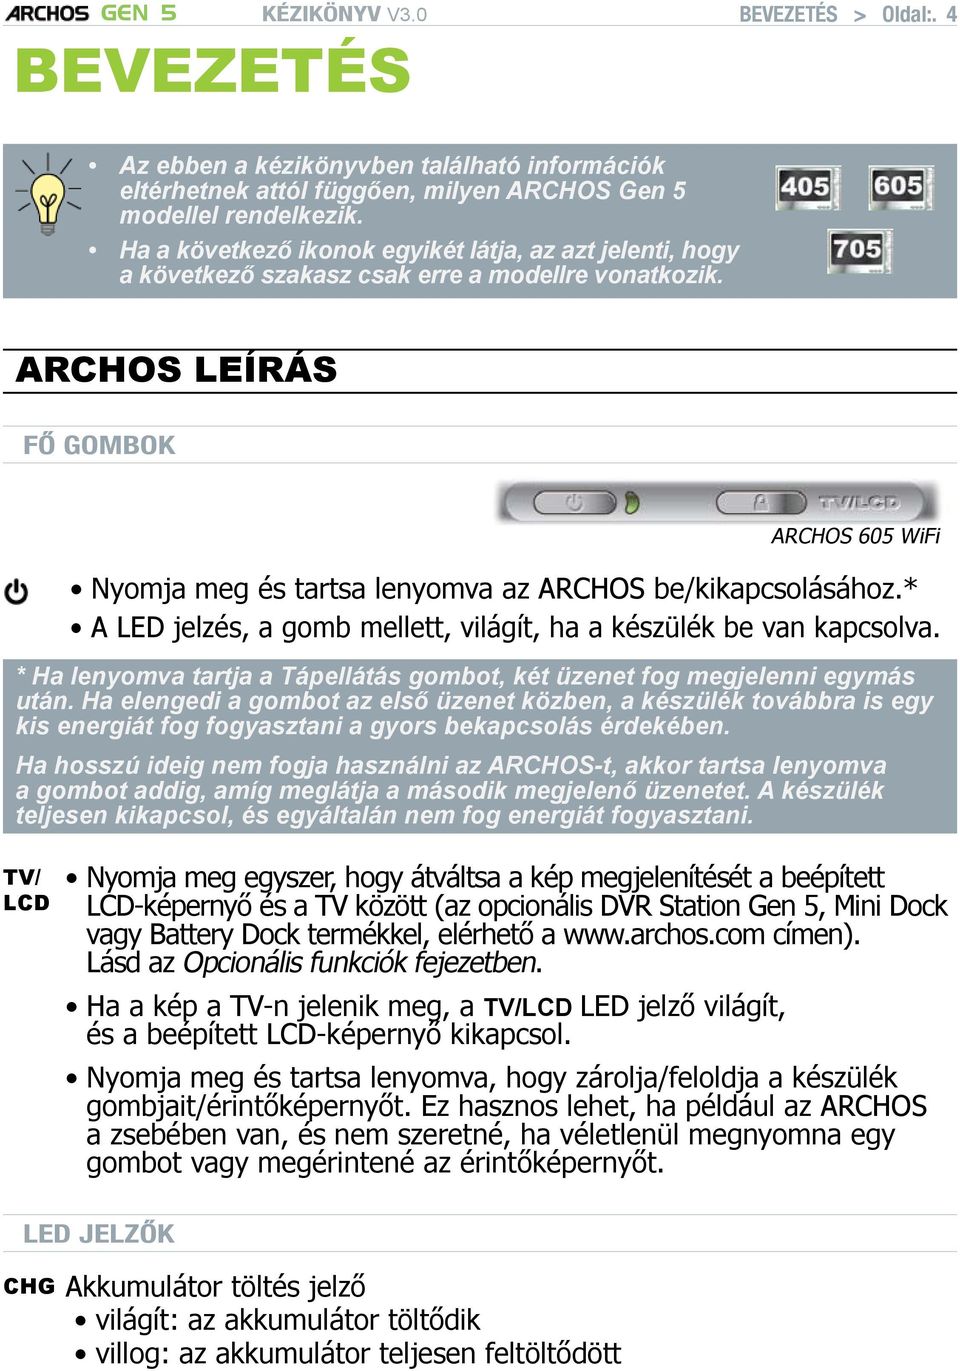 ARCHOS leírás Fő gombok ARCHOS 605 WiFi Nyomja meg és tartsa lenyomva az ARCHOS be/kikapcsolásához.* A LED jelzés, a gomb mellett, világít, ha a készülék be van kapcsolva.